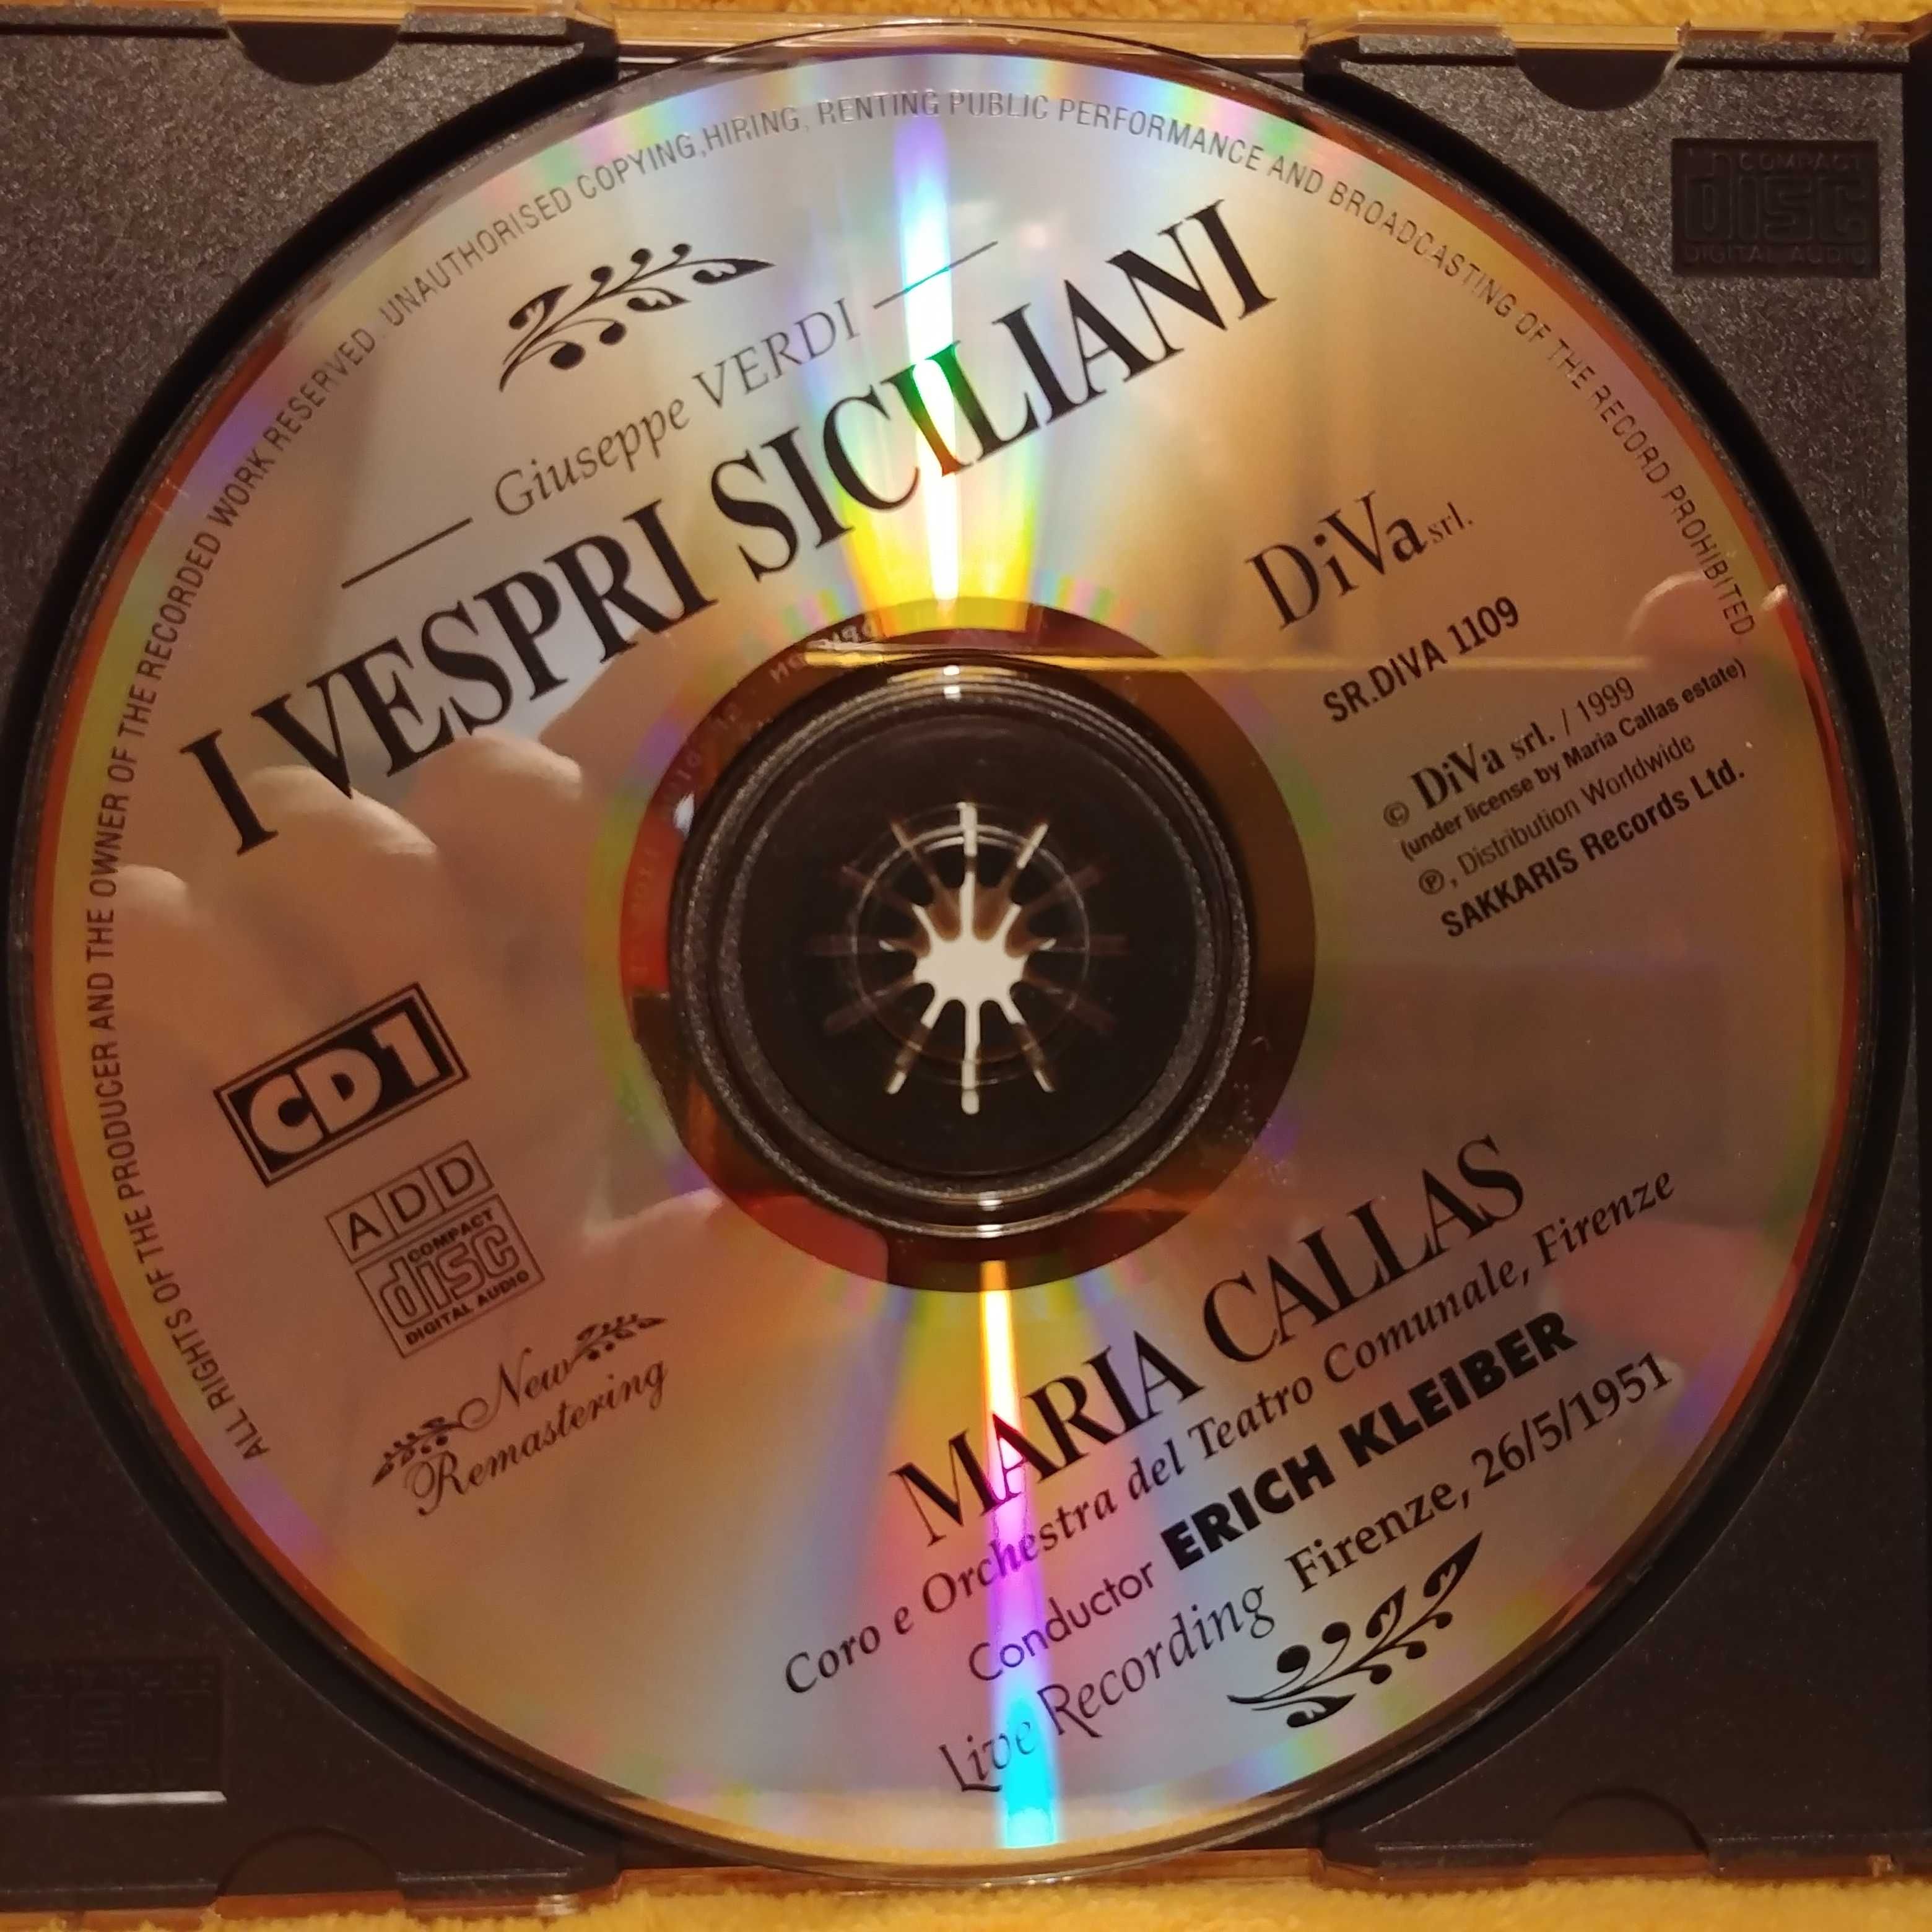 Maria Callas I Vespri Siciliani Nieszpory Sycylijskie Verdi 3 CD